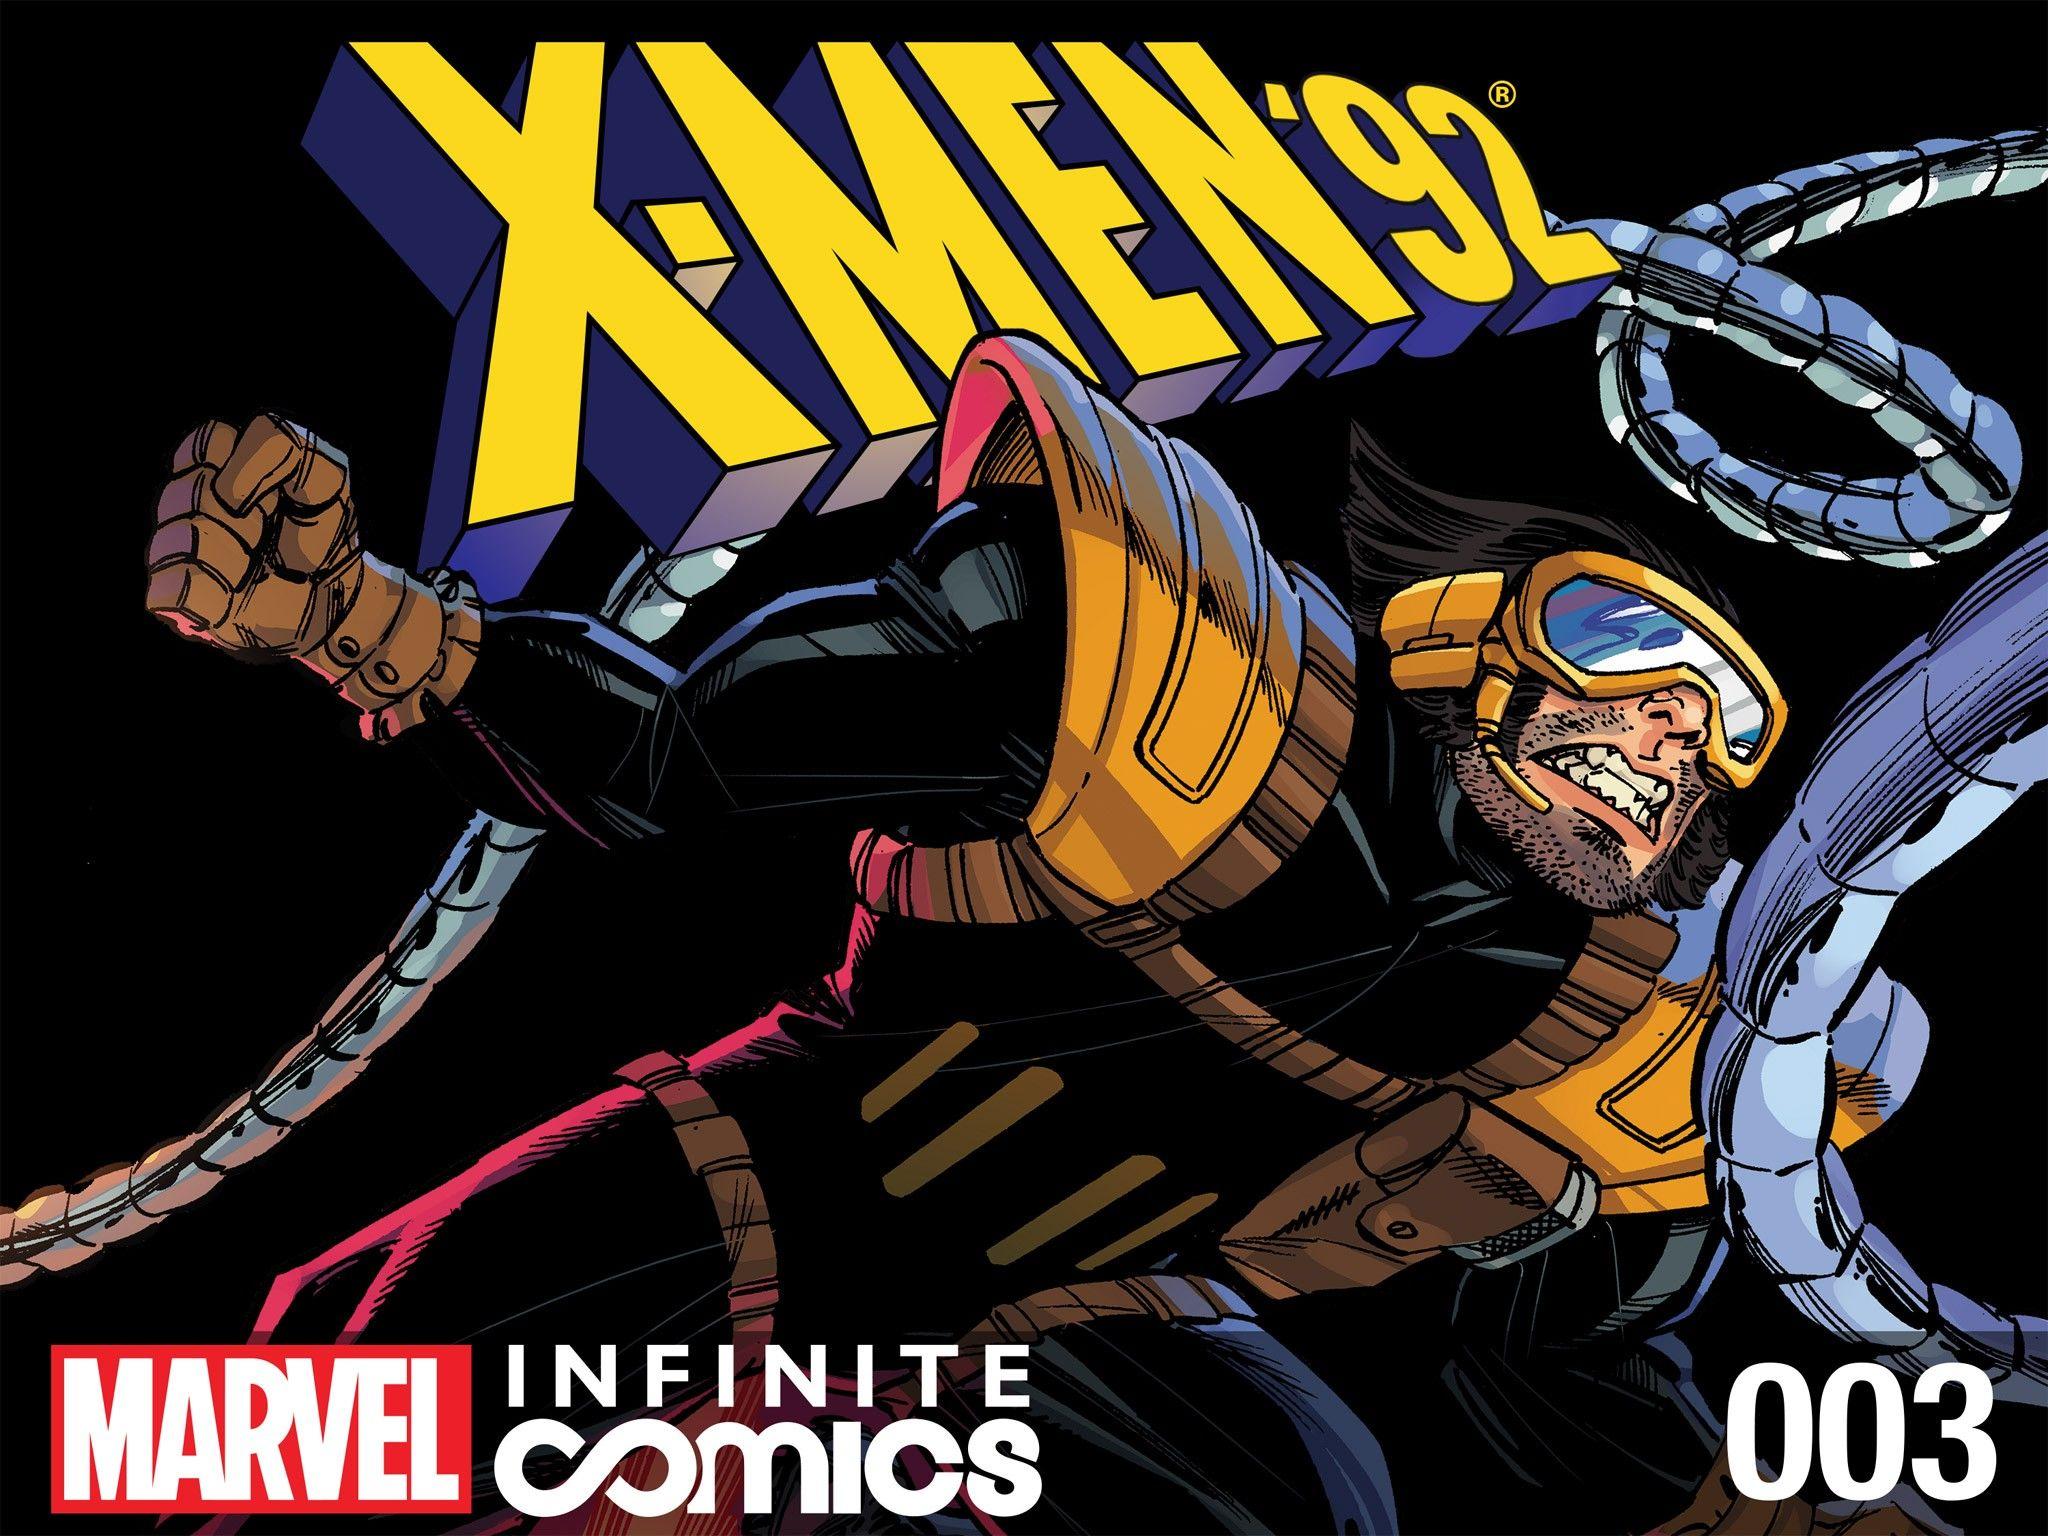 X-Men '92 Infinite Comic Vol. 1 #3